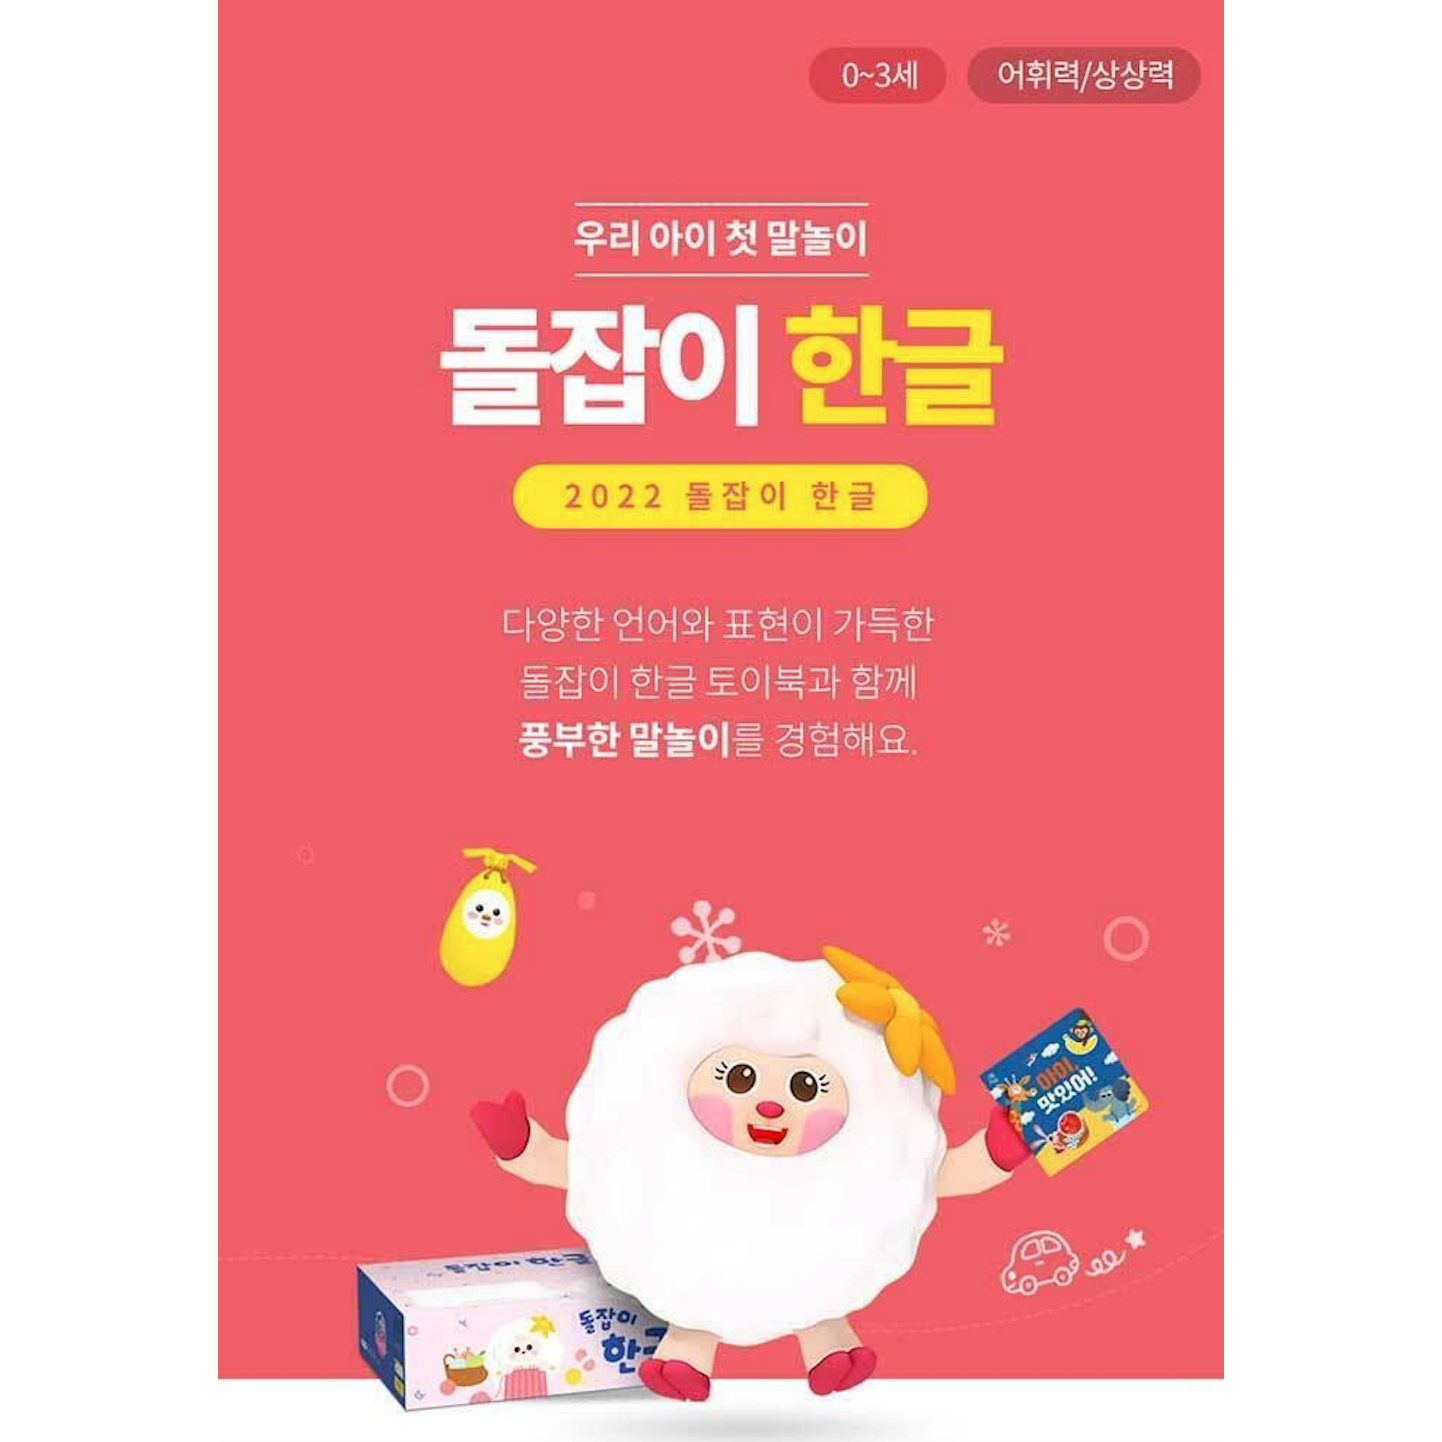 2022년 개정판 돌잡이 한글 18종+디지털북 포함 (바나나펜 미포함)